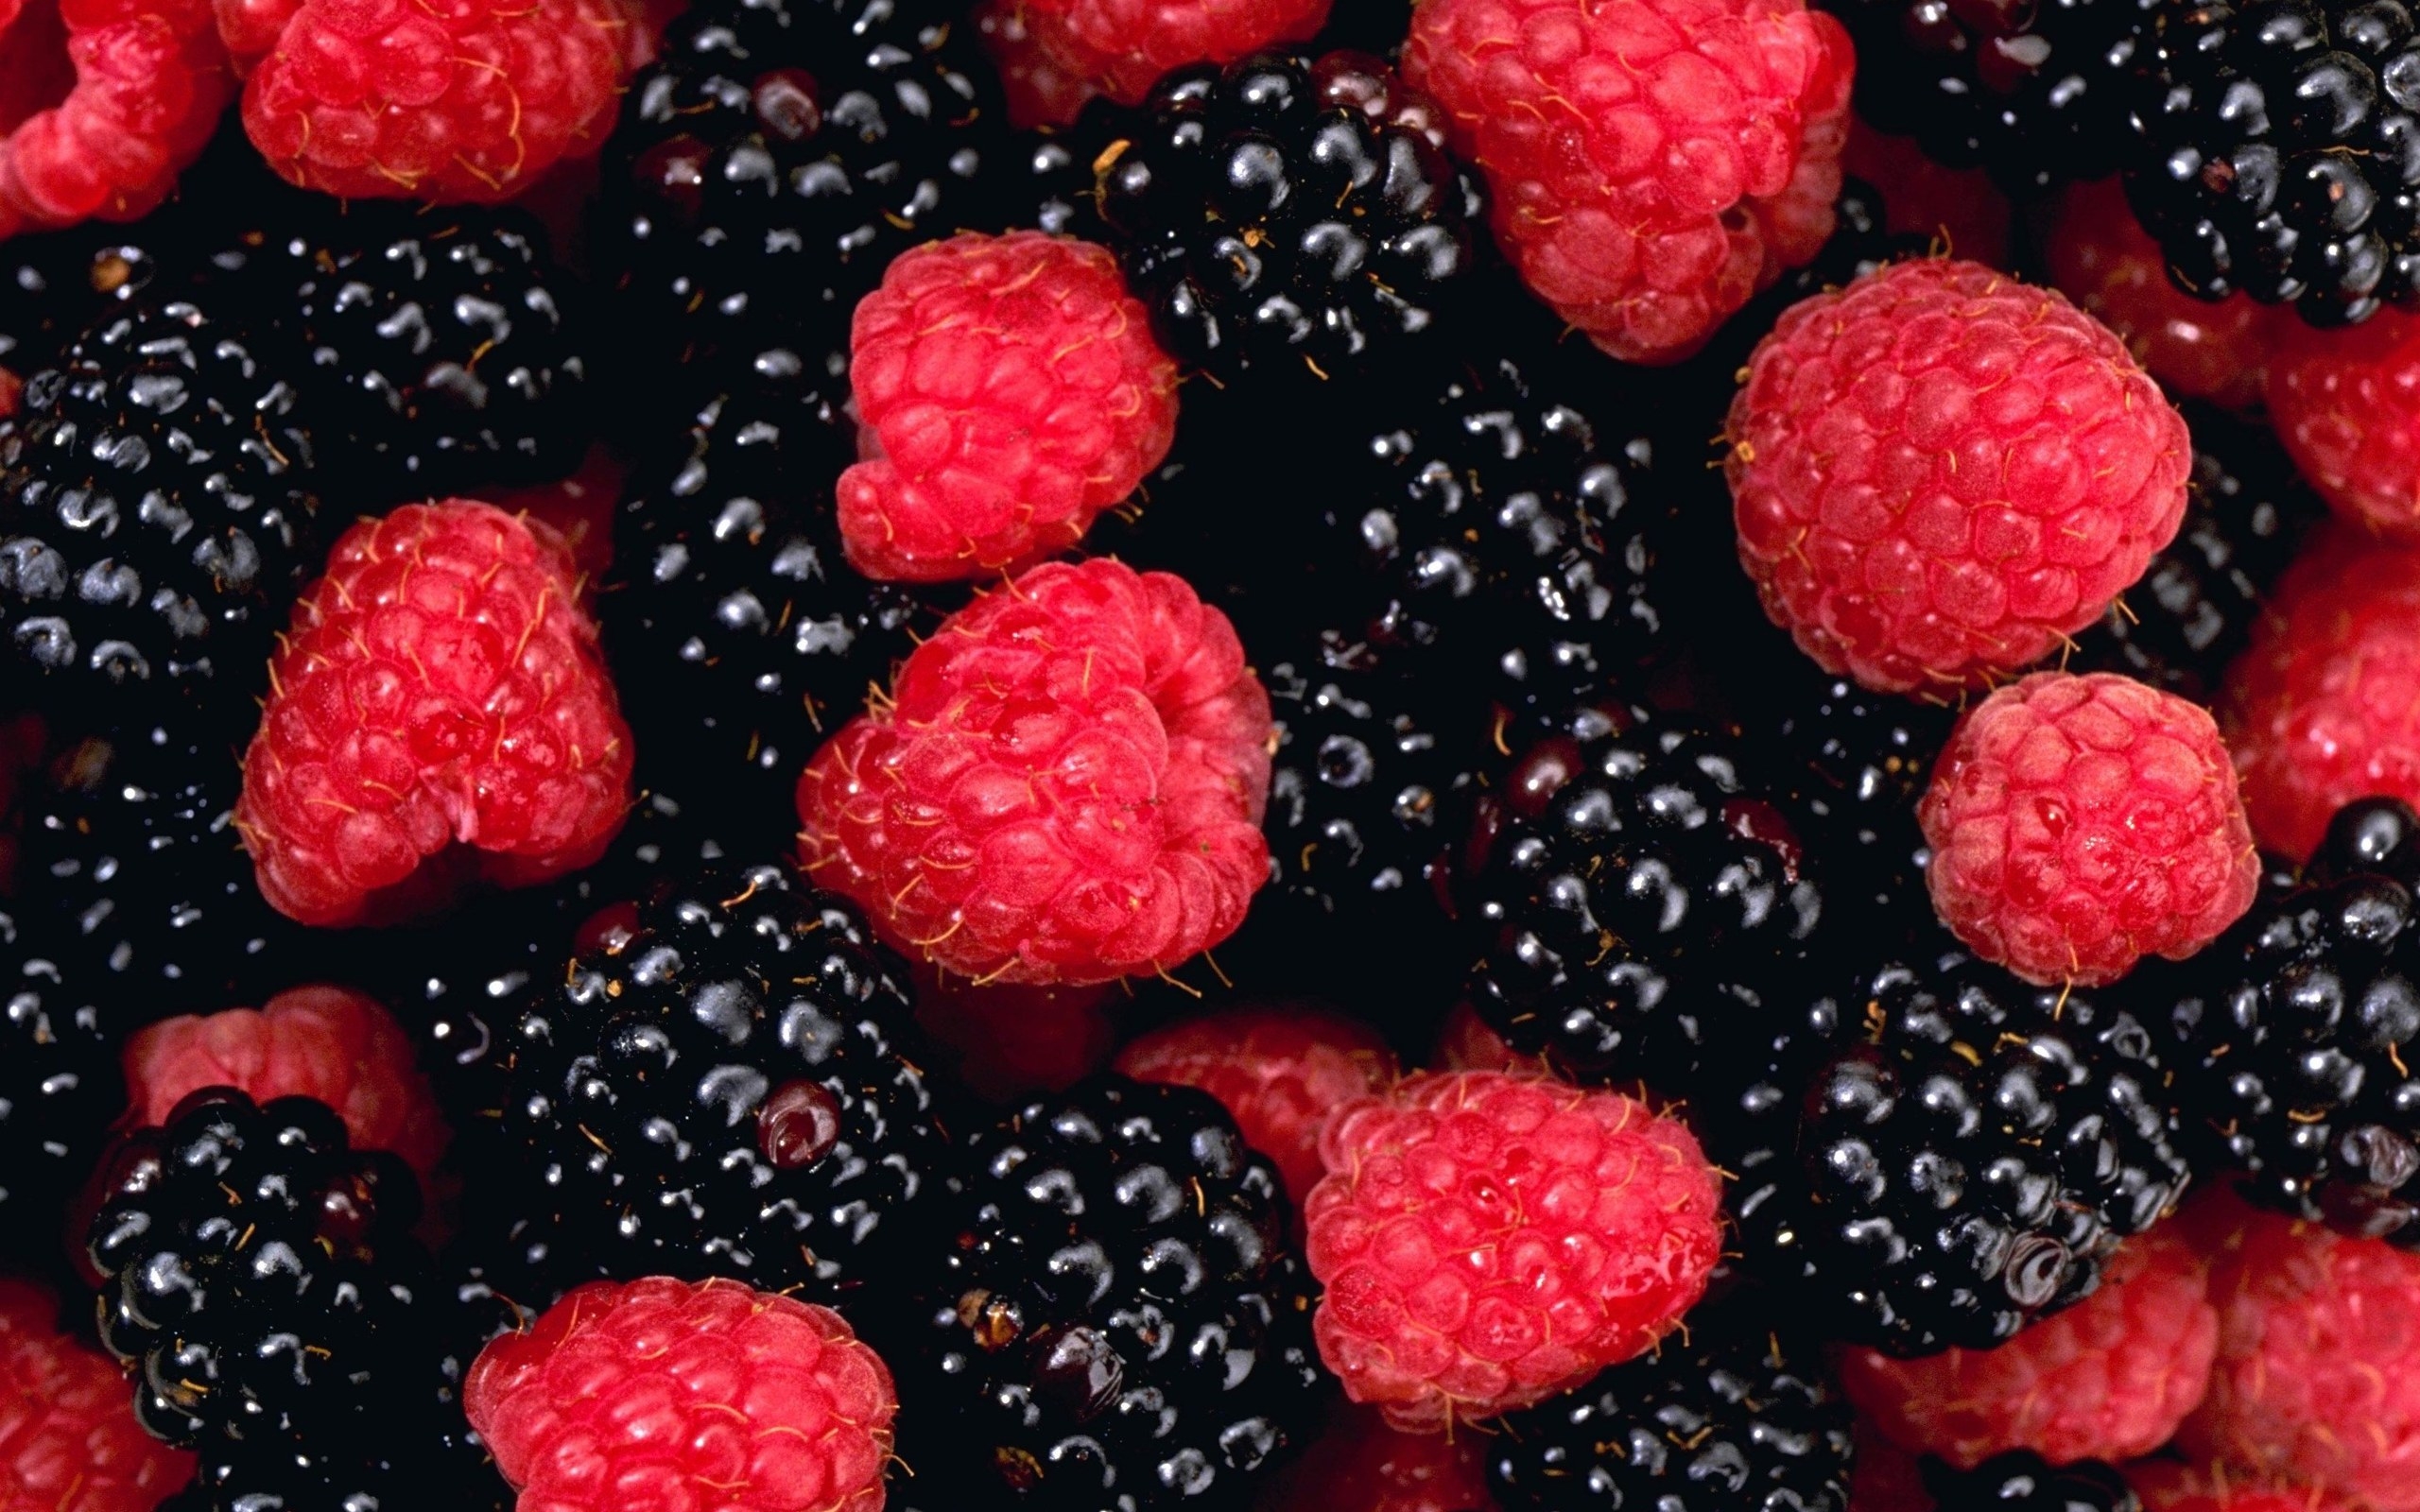 raspberriesblackberries